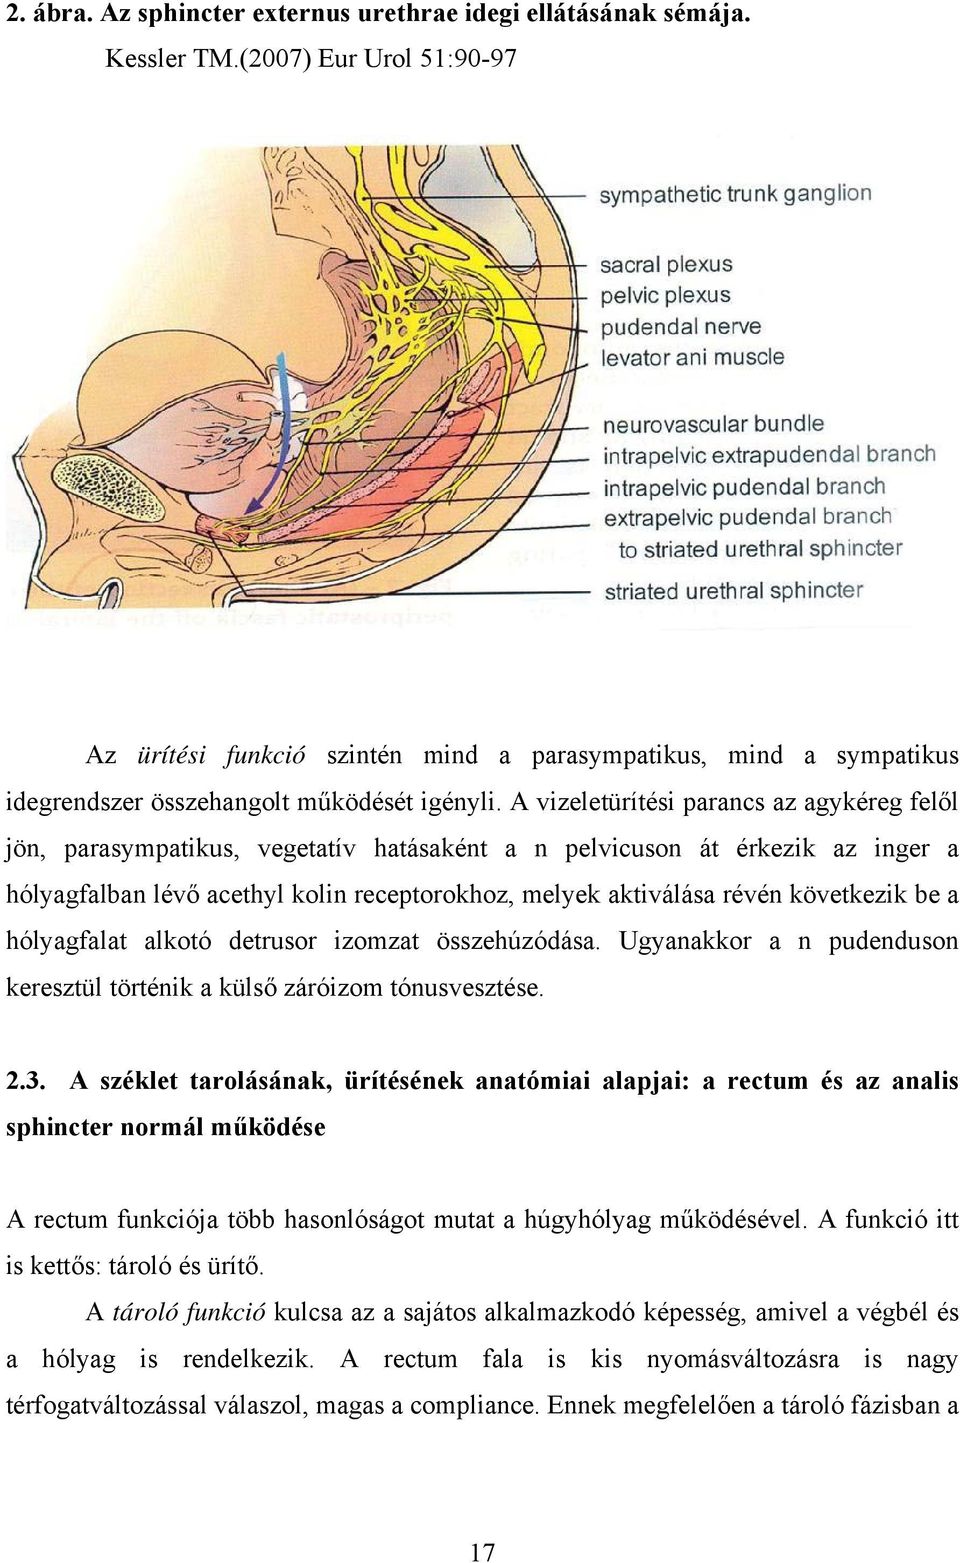 A vizeletürítési parancs az agykéreg felől jön, parasympatikus, vegetatív hatásaként a n pelvicuson át érkezik az inger a hólyagfalban lévő acethyl kolin receptorokhoz, melyek aktiválása révén